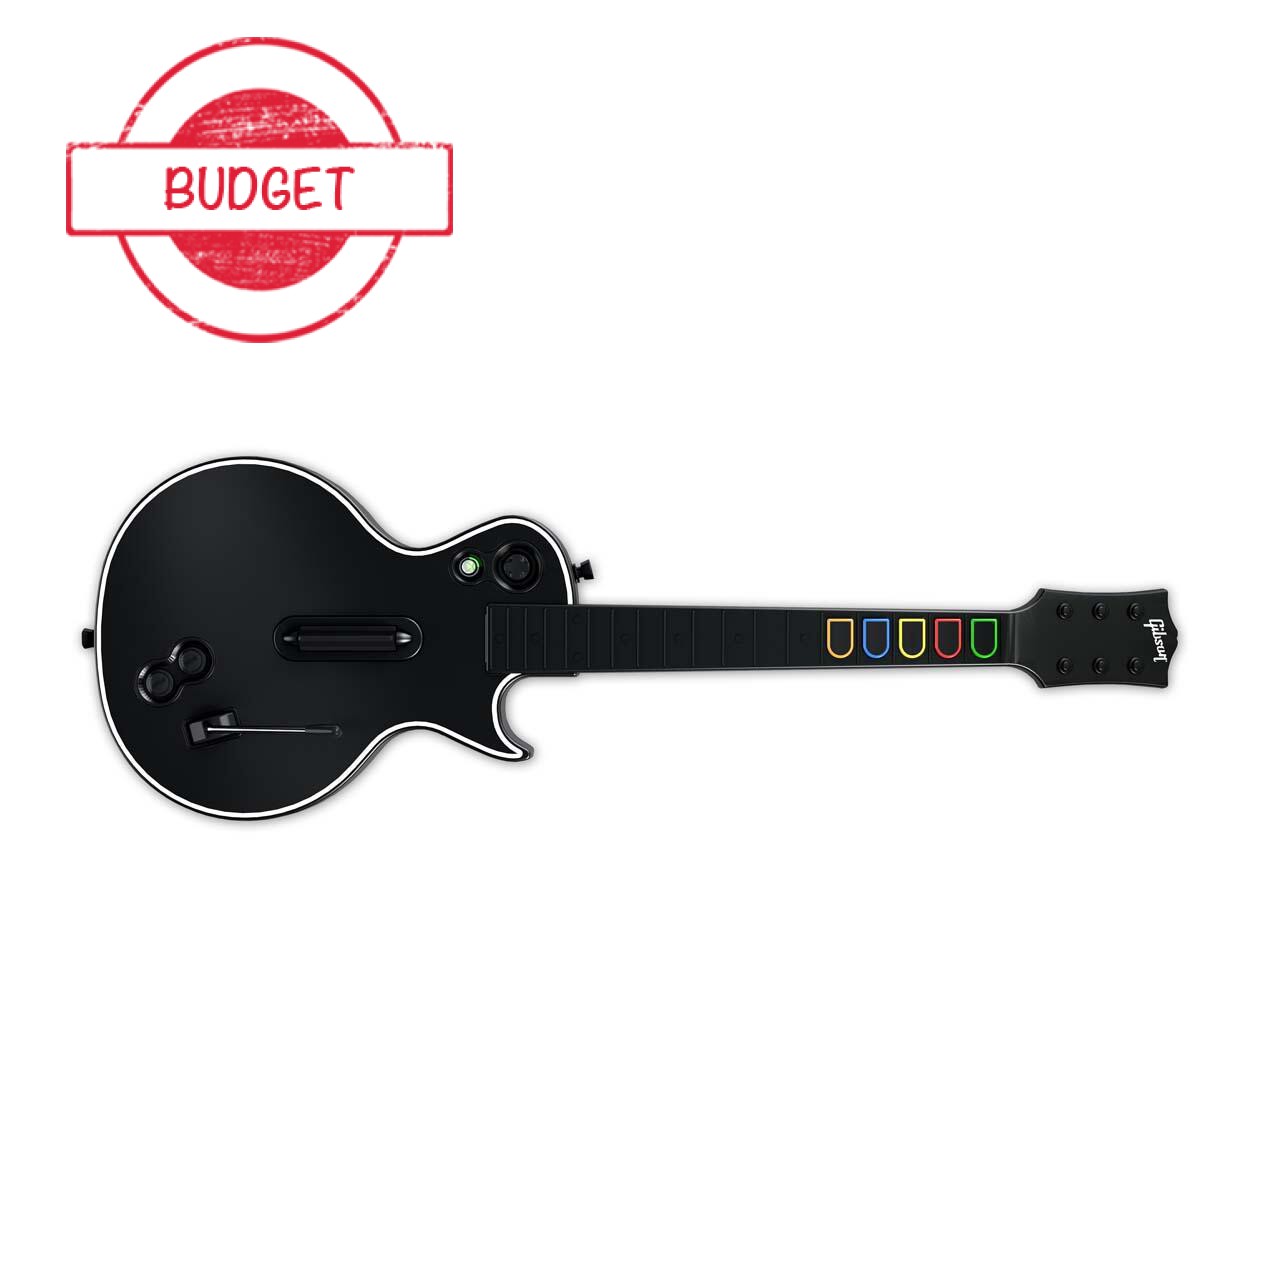 Guitar Hero Guitar - Legends of Rock - Budget Kopen | Xbox 360 Hardware